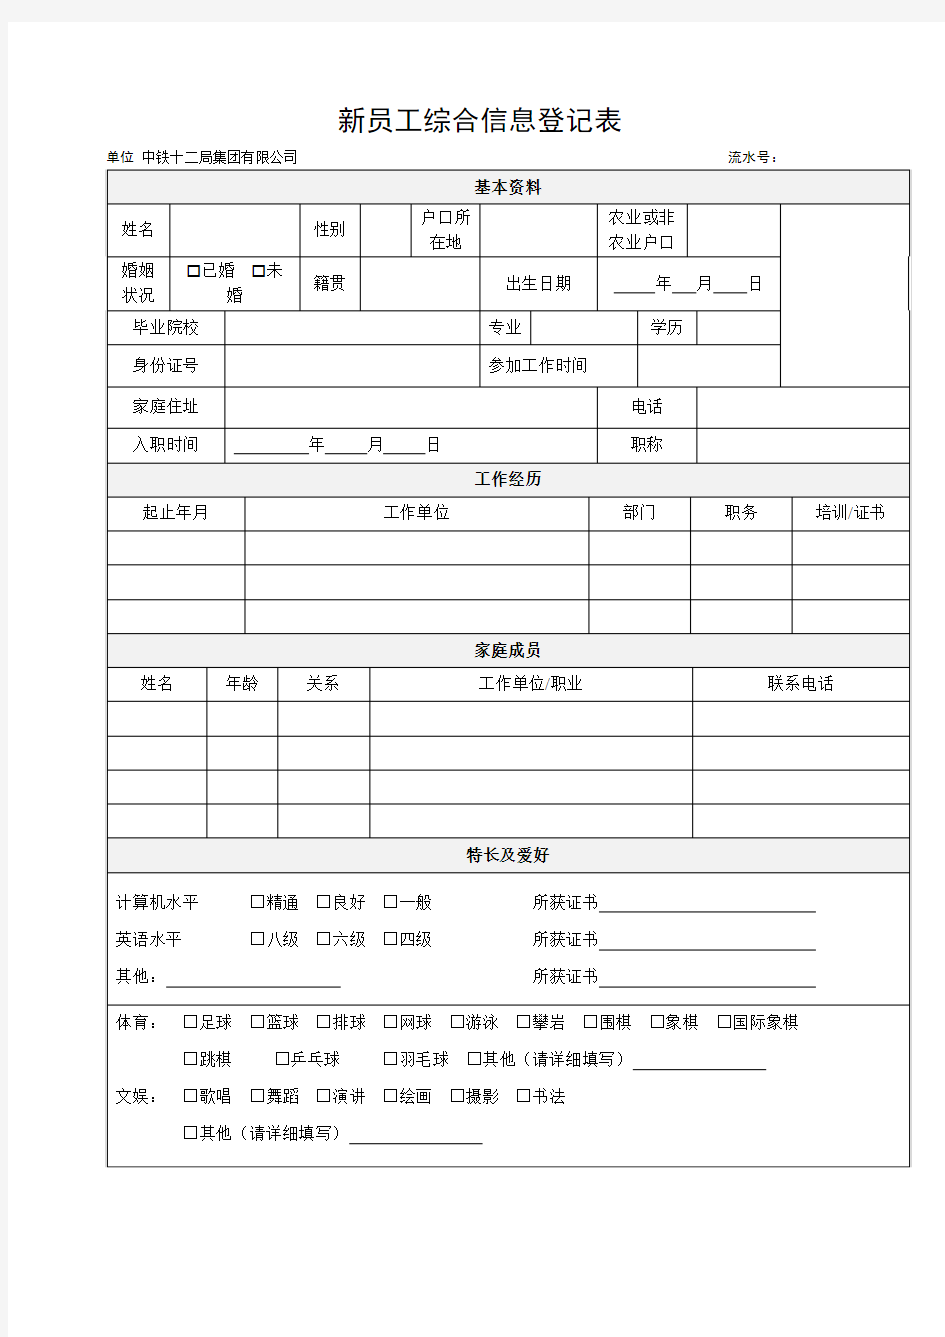 中铁十二局集团有限公司录用通知职工登记表